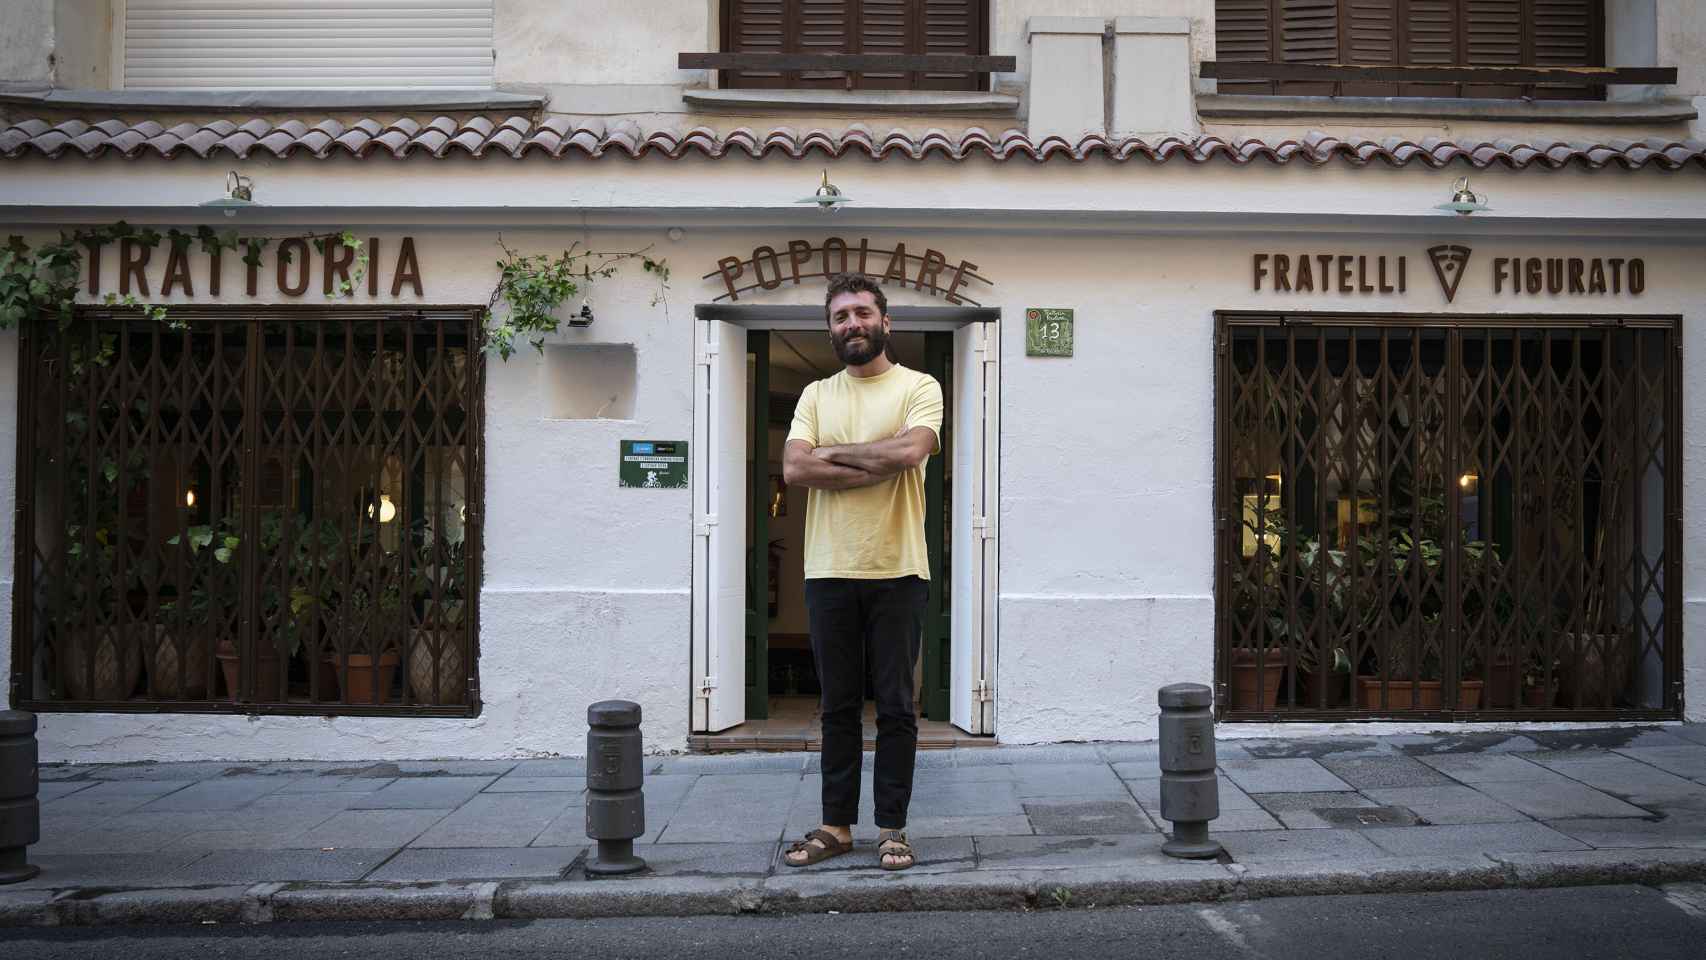 Vittorio, el mayor de los hermanos, frente la pizzería Fratelli Figurato - Trattoria Popolare, en Madrid.